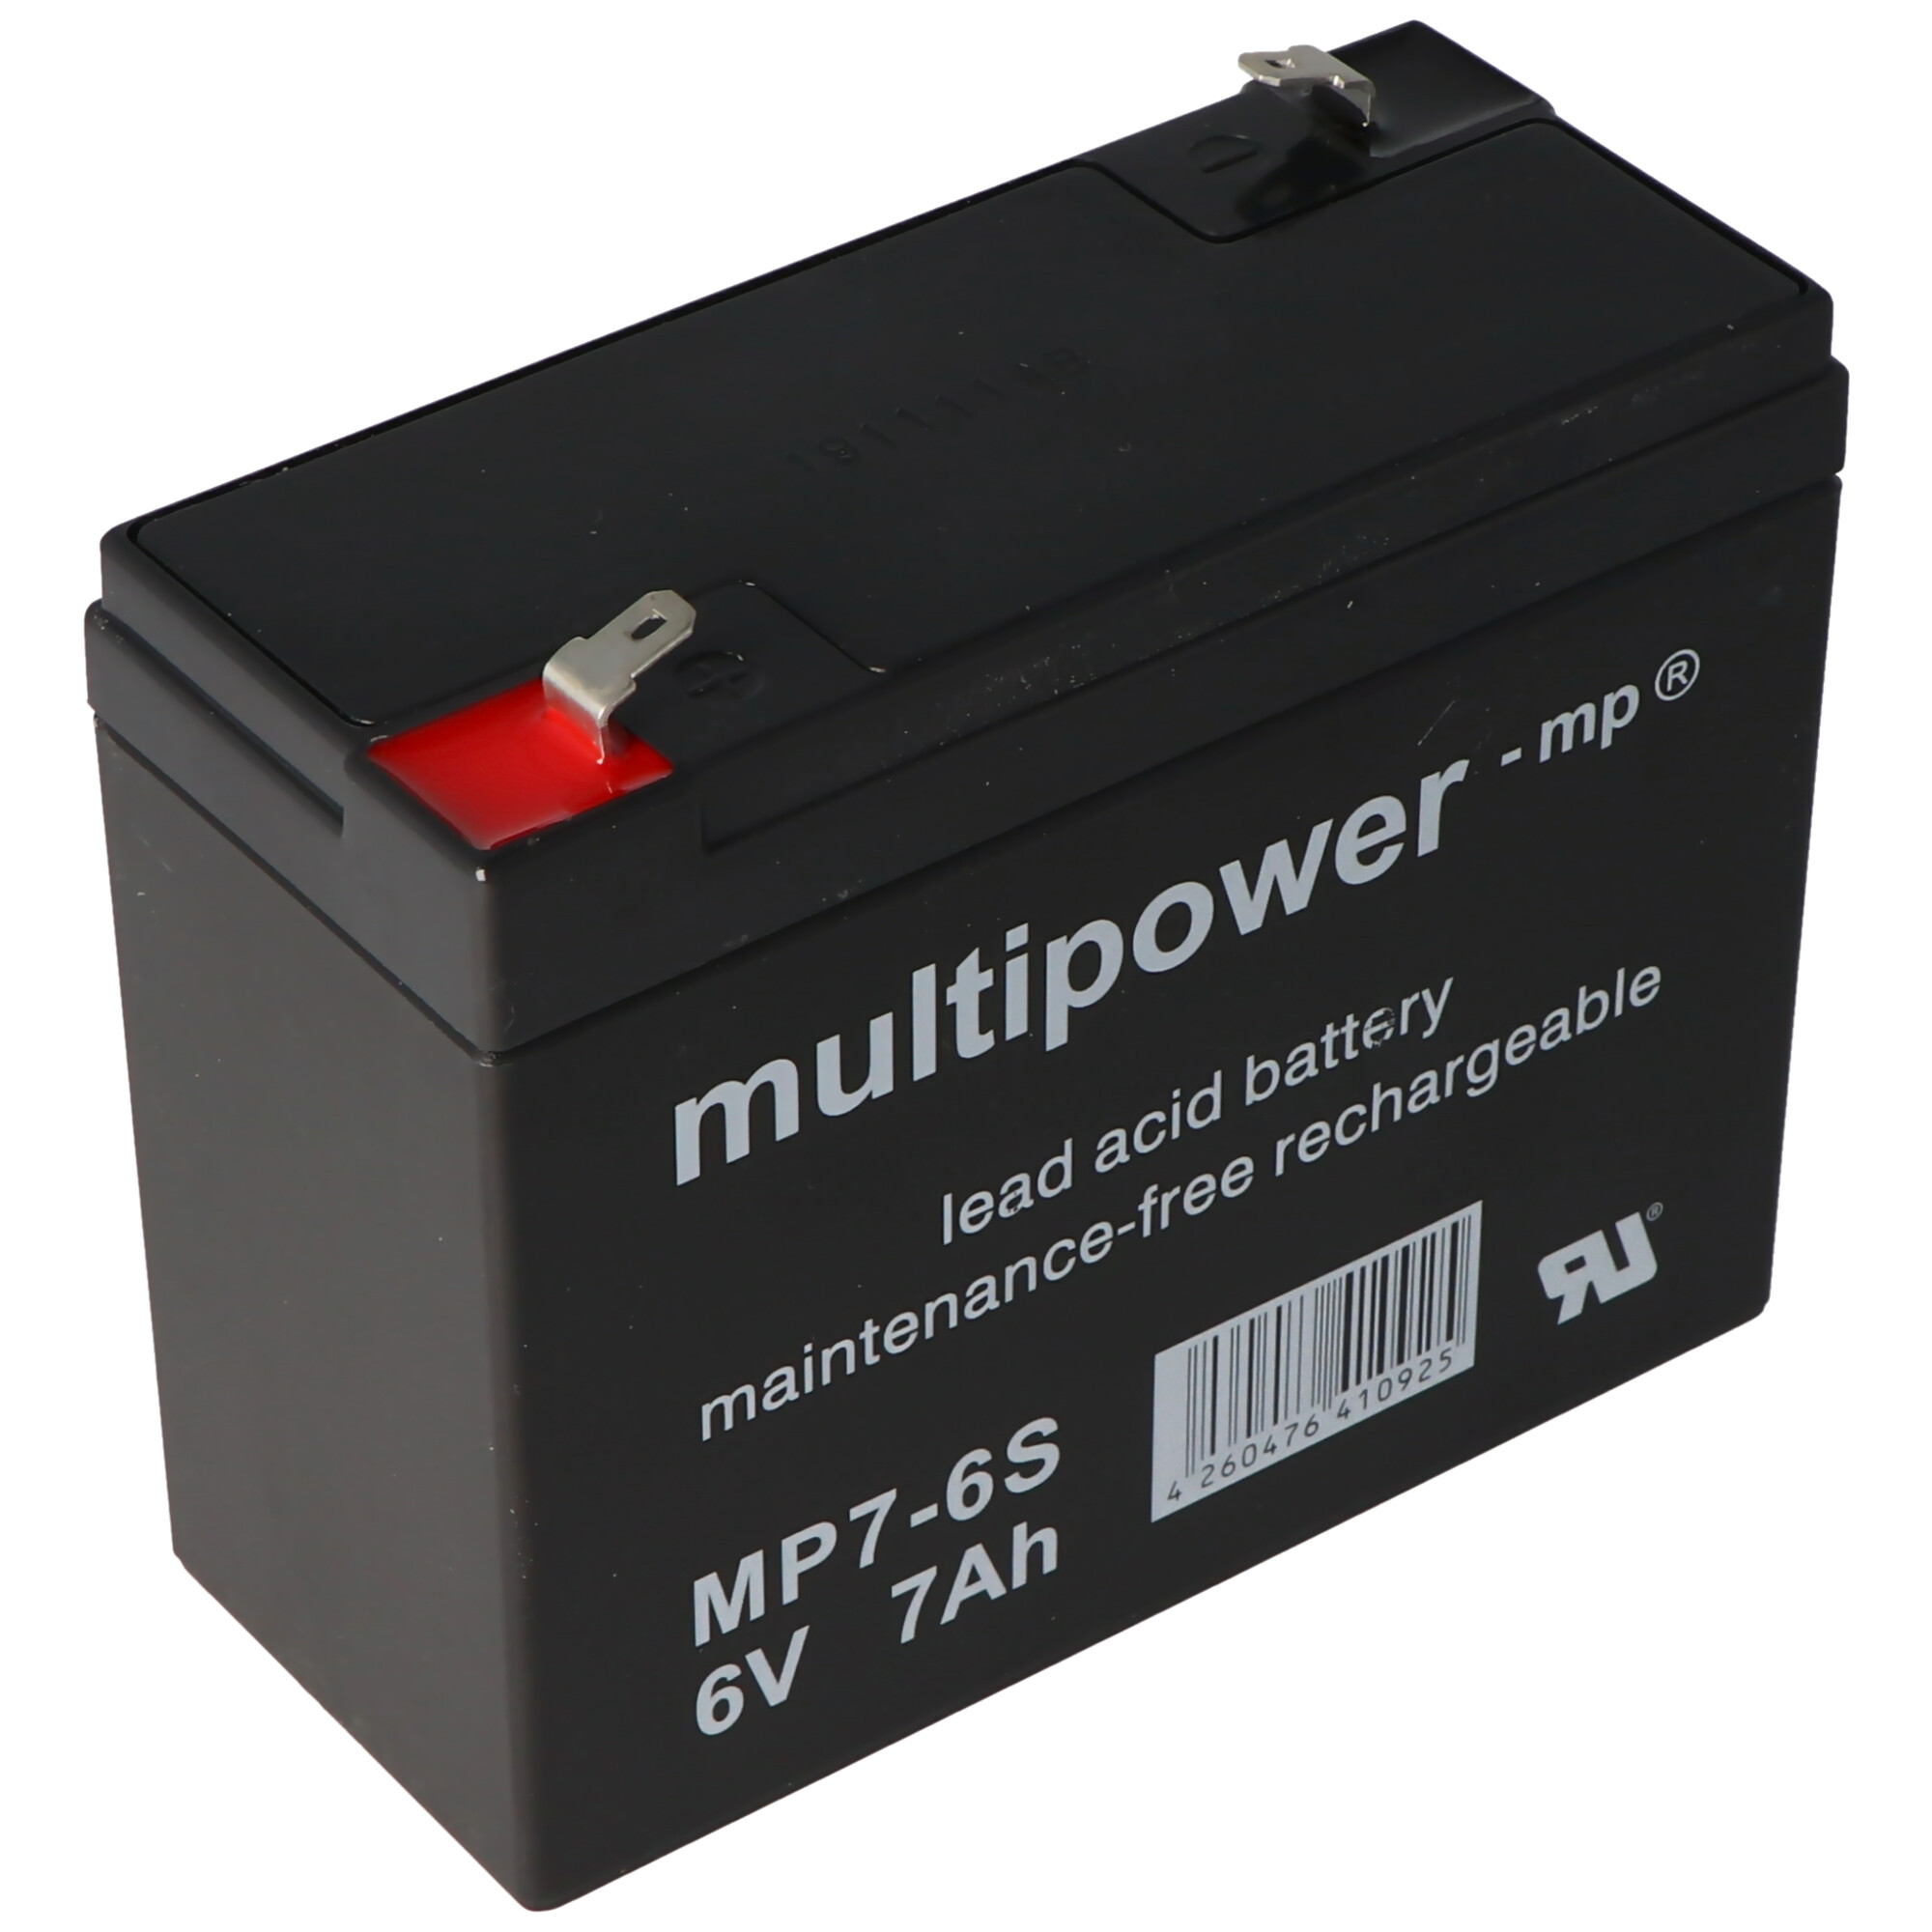 Multipower MP7-6S passend für den Sonnenschein A206/6.5S Akku, jedoch mit etwas anderen Kontakten